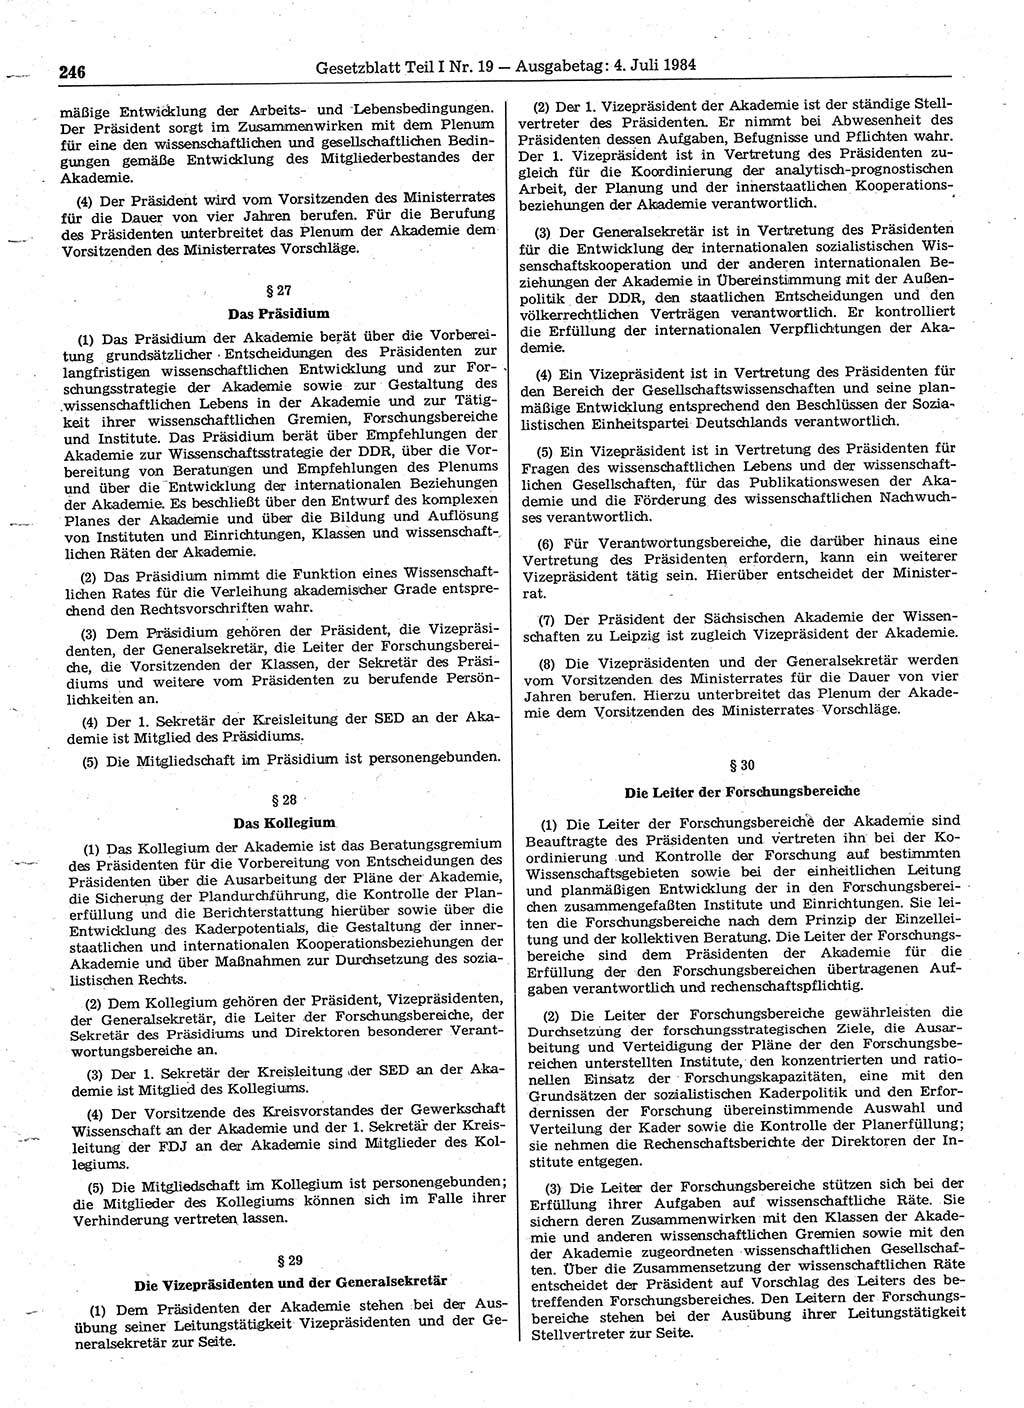 Gesetzblatt (GBl.) der Deutschen Demokratischen Republik (DDR) Teil Ⅰ 1984, Seite 246 (GBl. DDR Ⅰ 1984, S. 246)